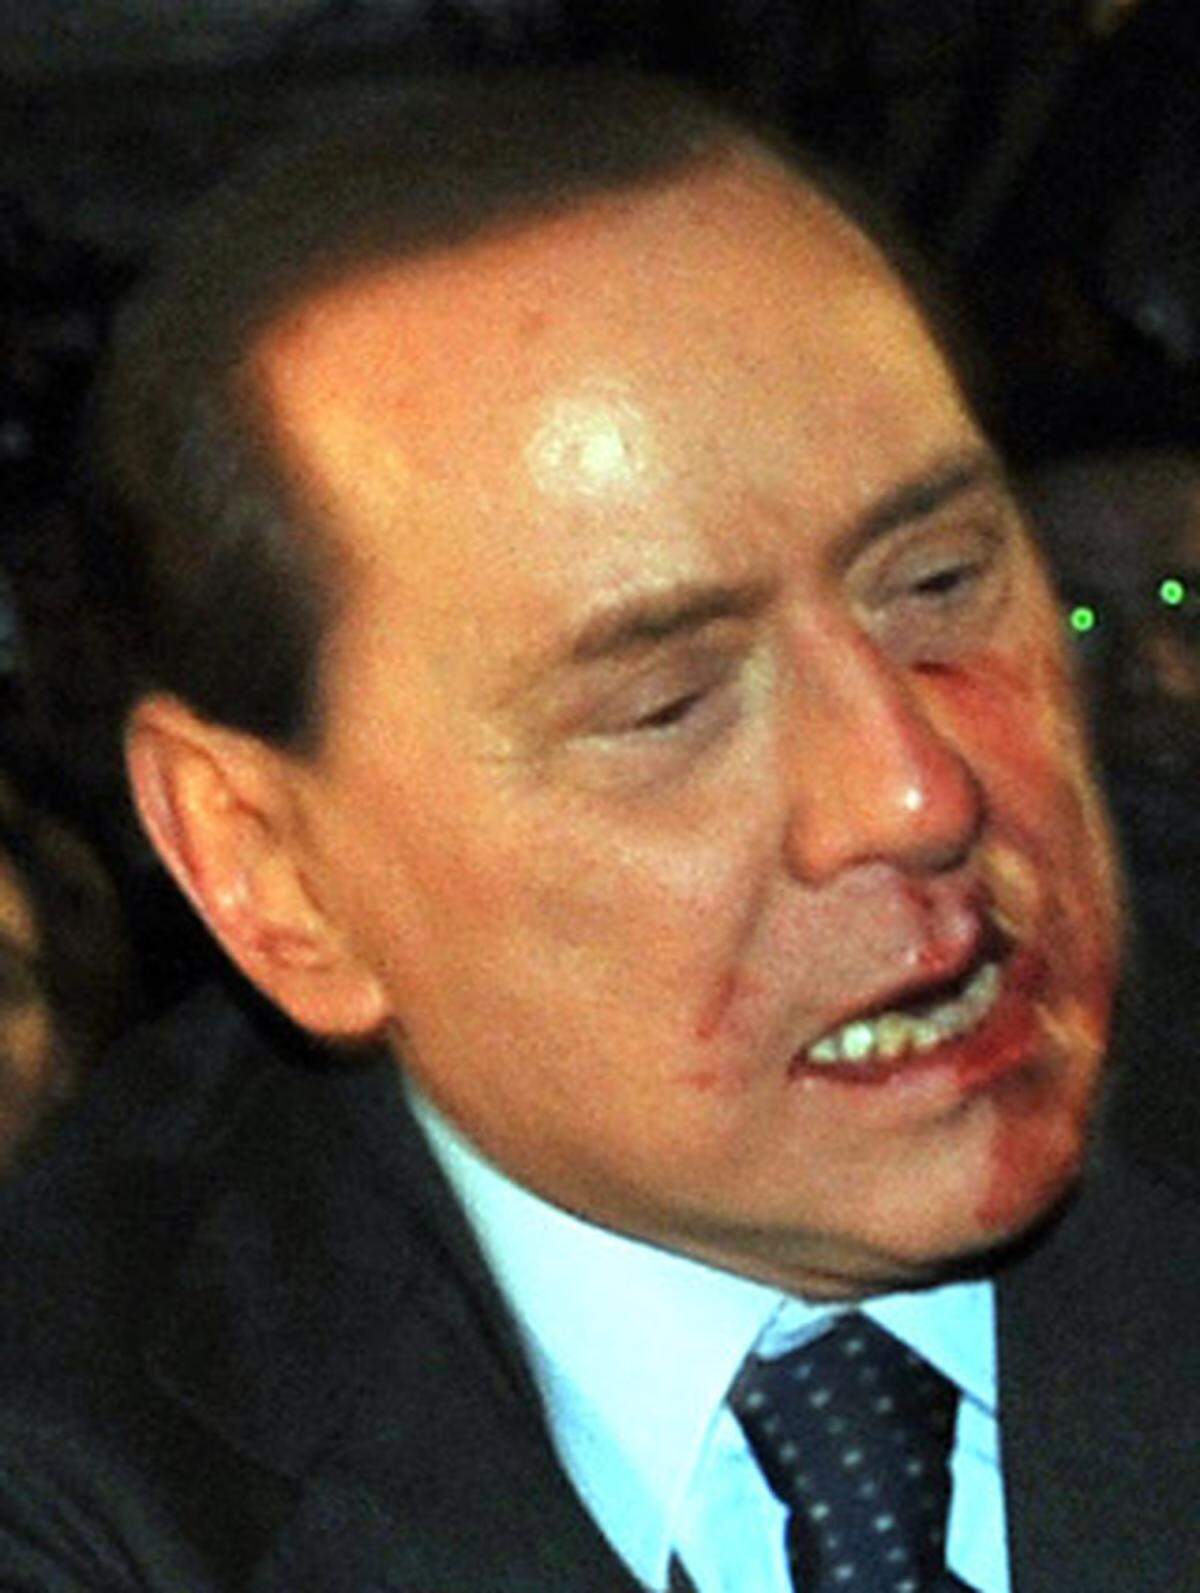 Berlusconi erleidet einen Nasenbeinbruch und Verletzungen an der Lippe. Außerdem brechen zwei Zähne ab.